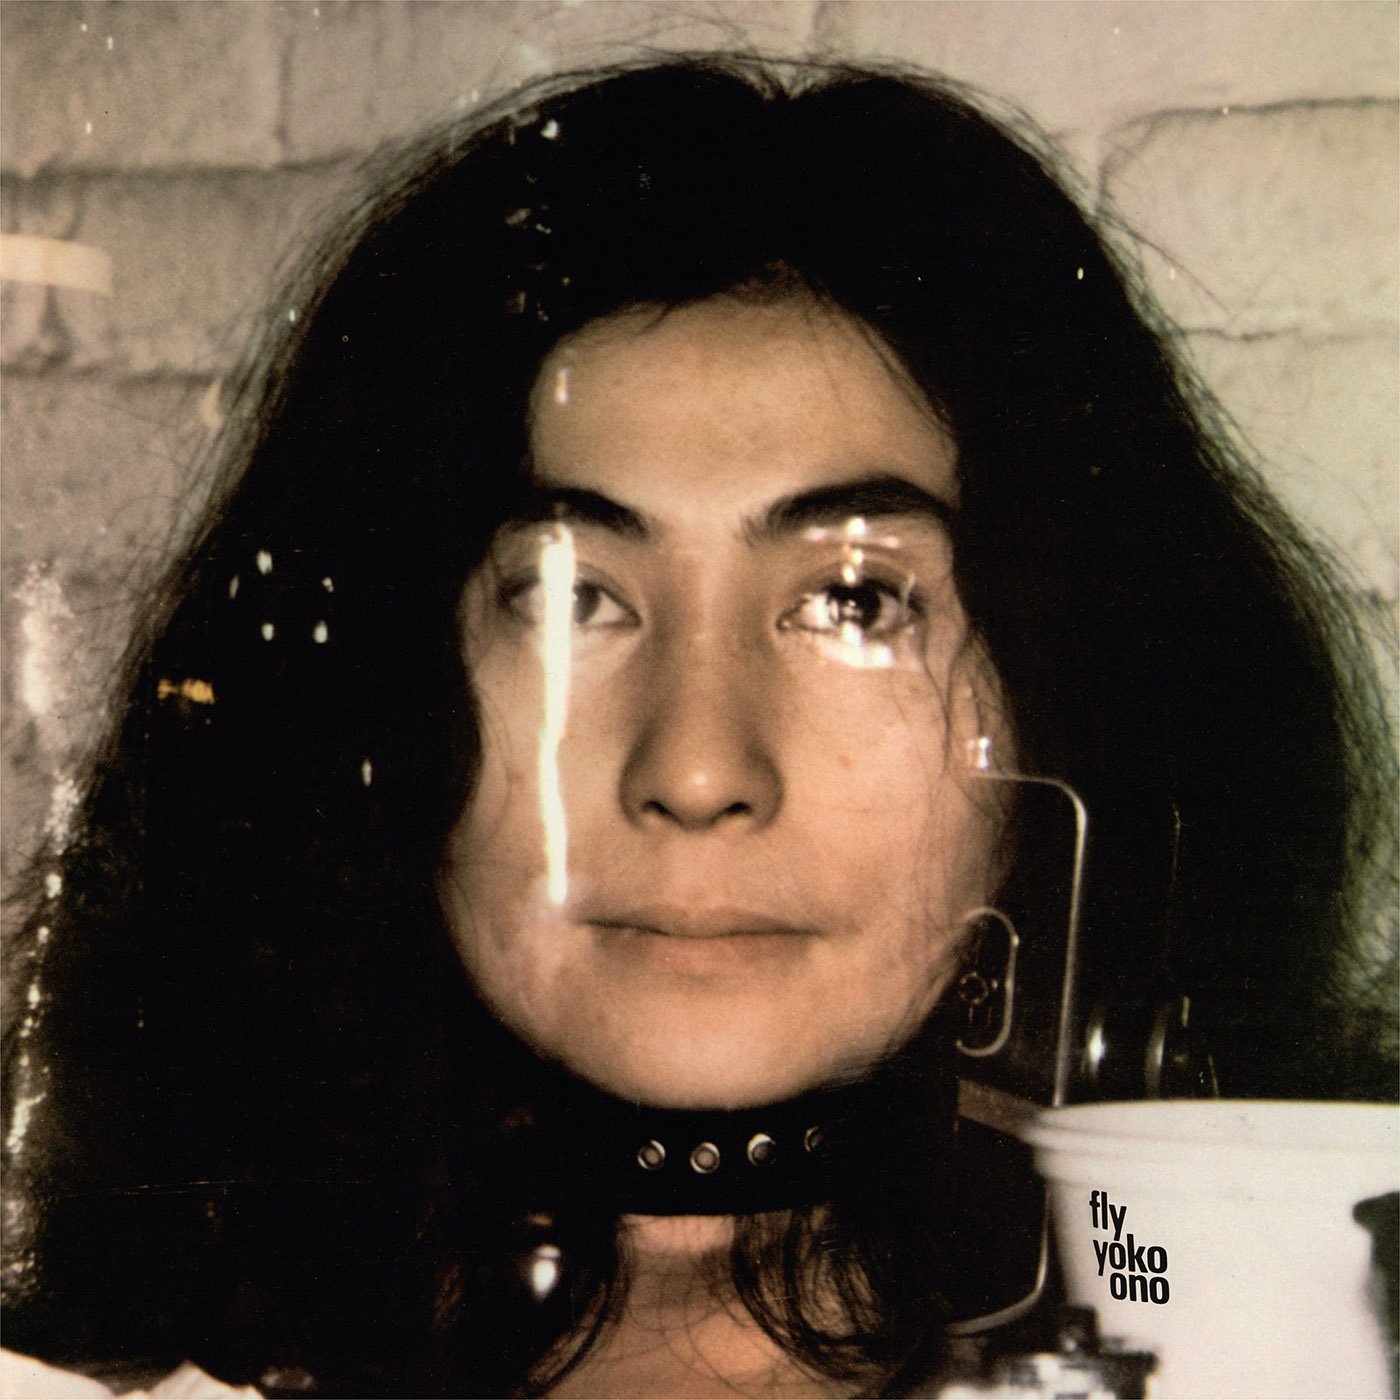 Vinile Yoko Ono - Fly (2 Lp) NUOVO SIGILLATO, EDIZIONE DEL 14/07/2017 SUBITO DISPONIBILE